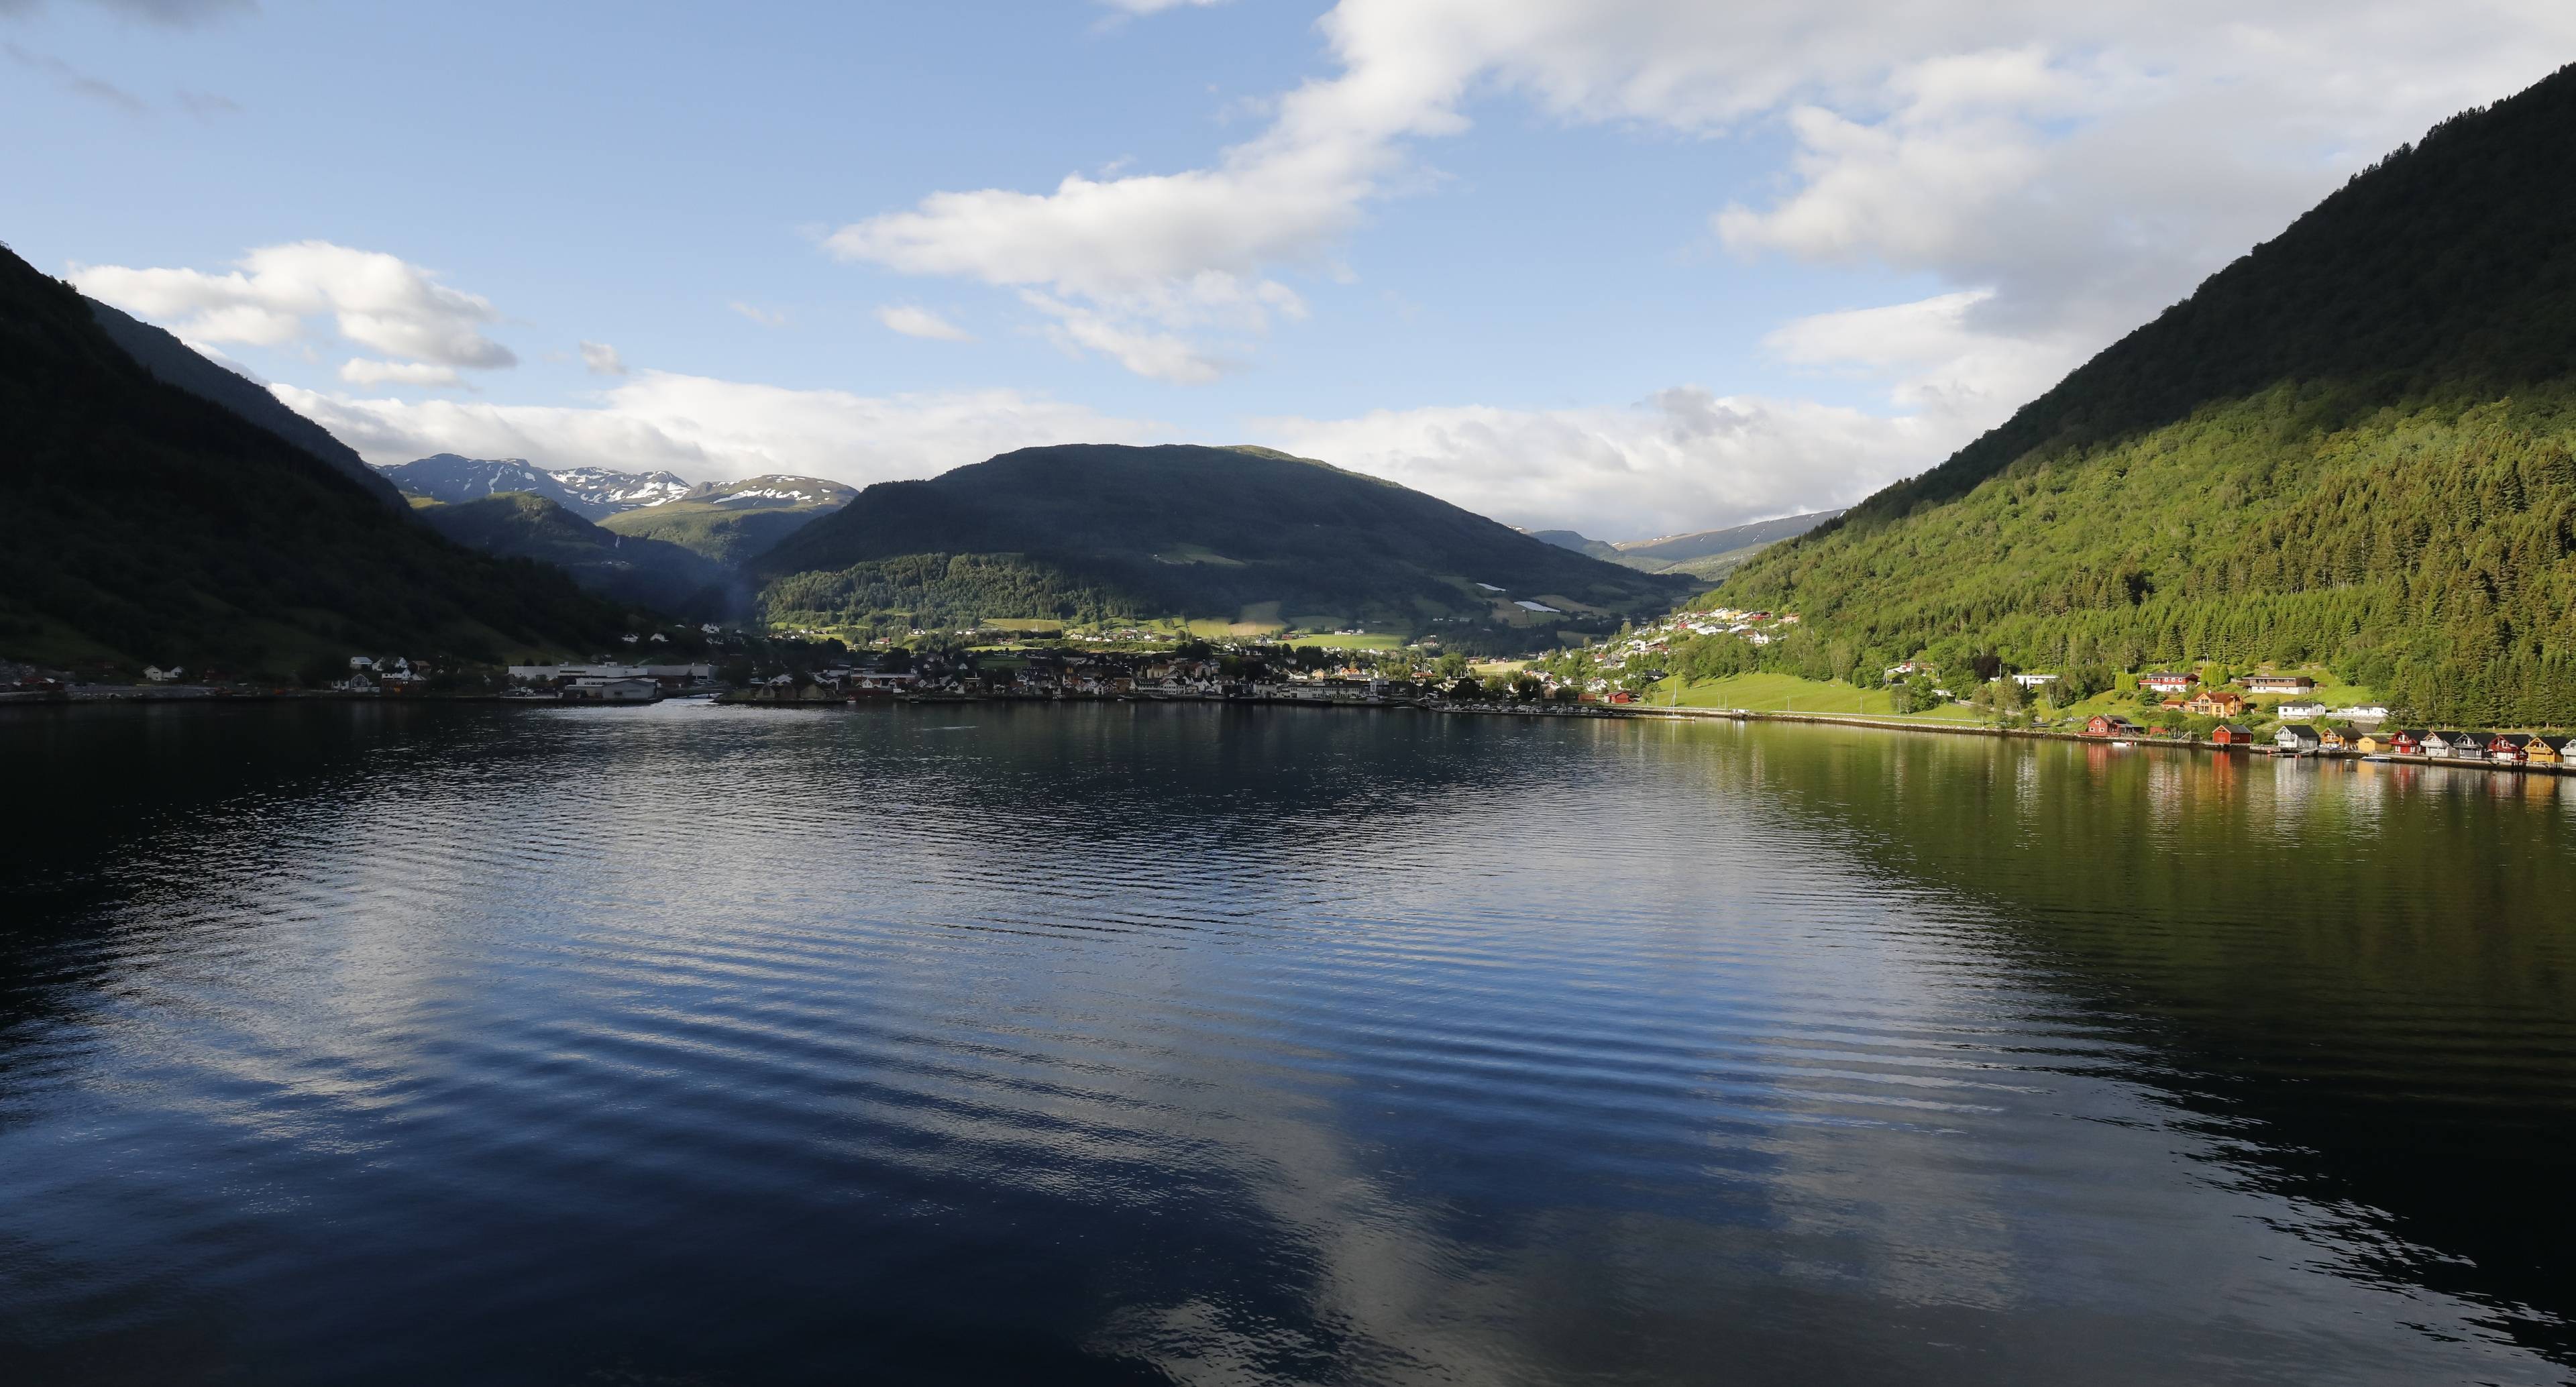 Iniziate la vostra avventura verso il Sognefjord!